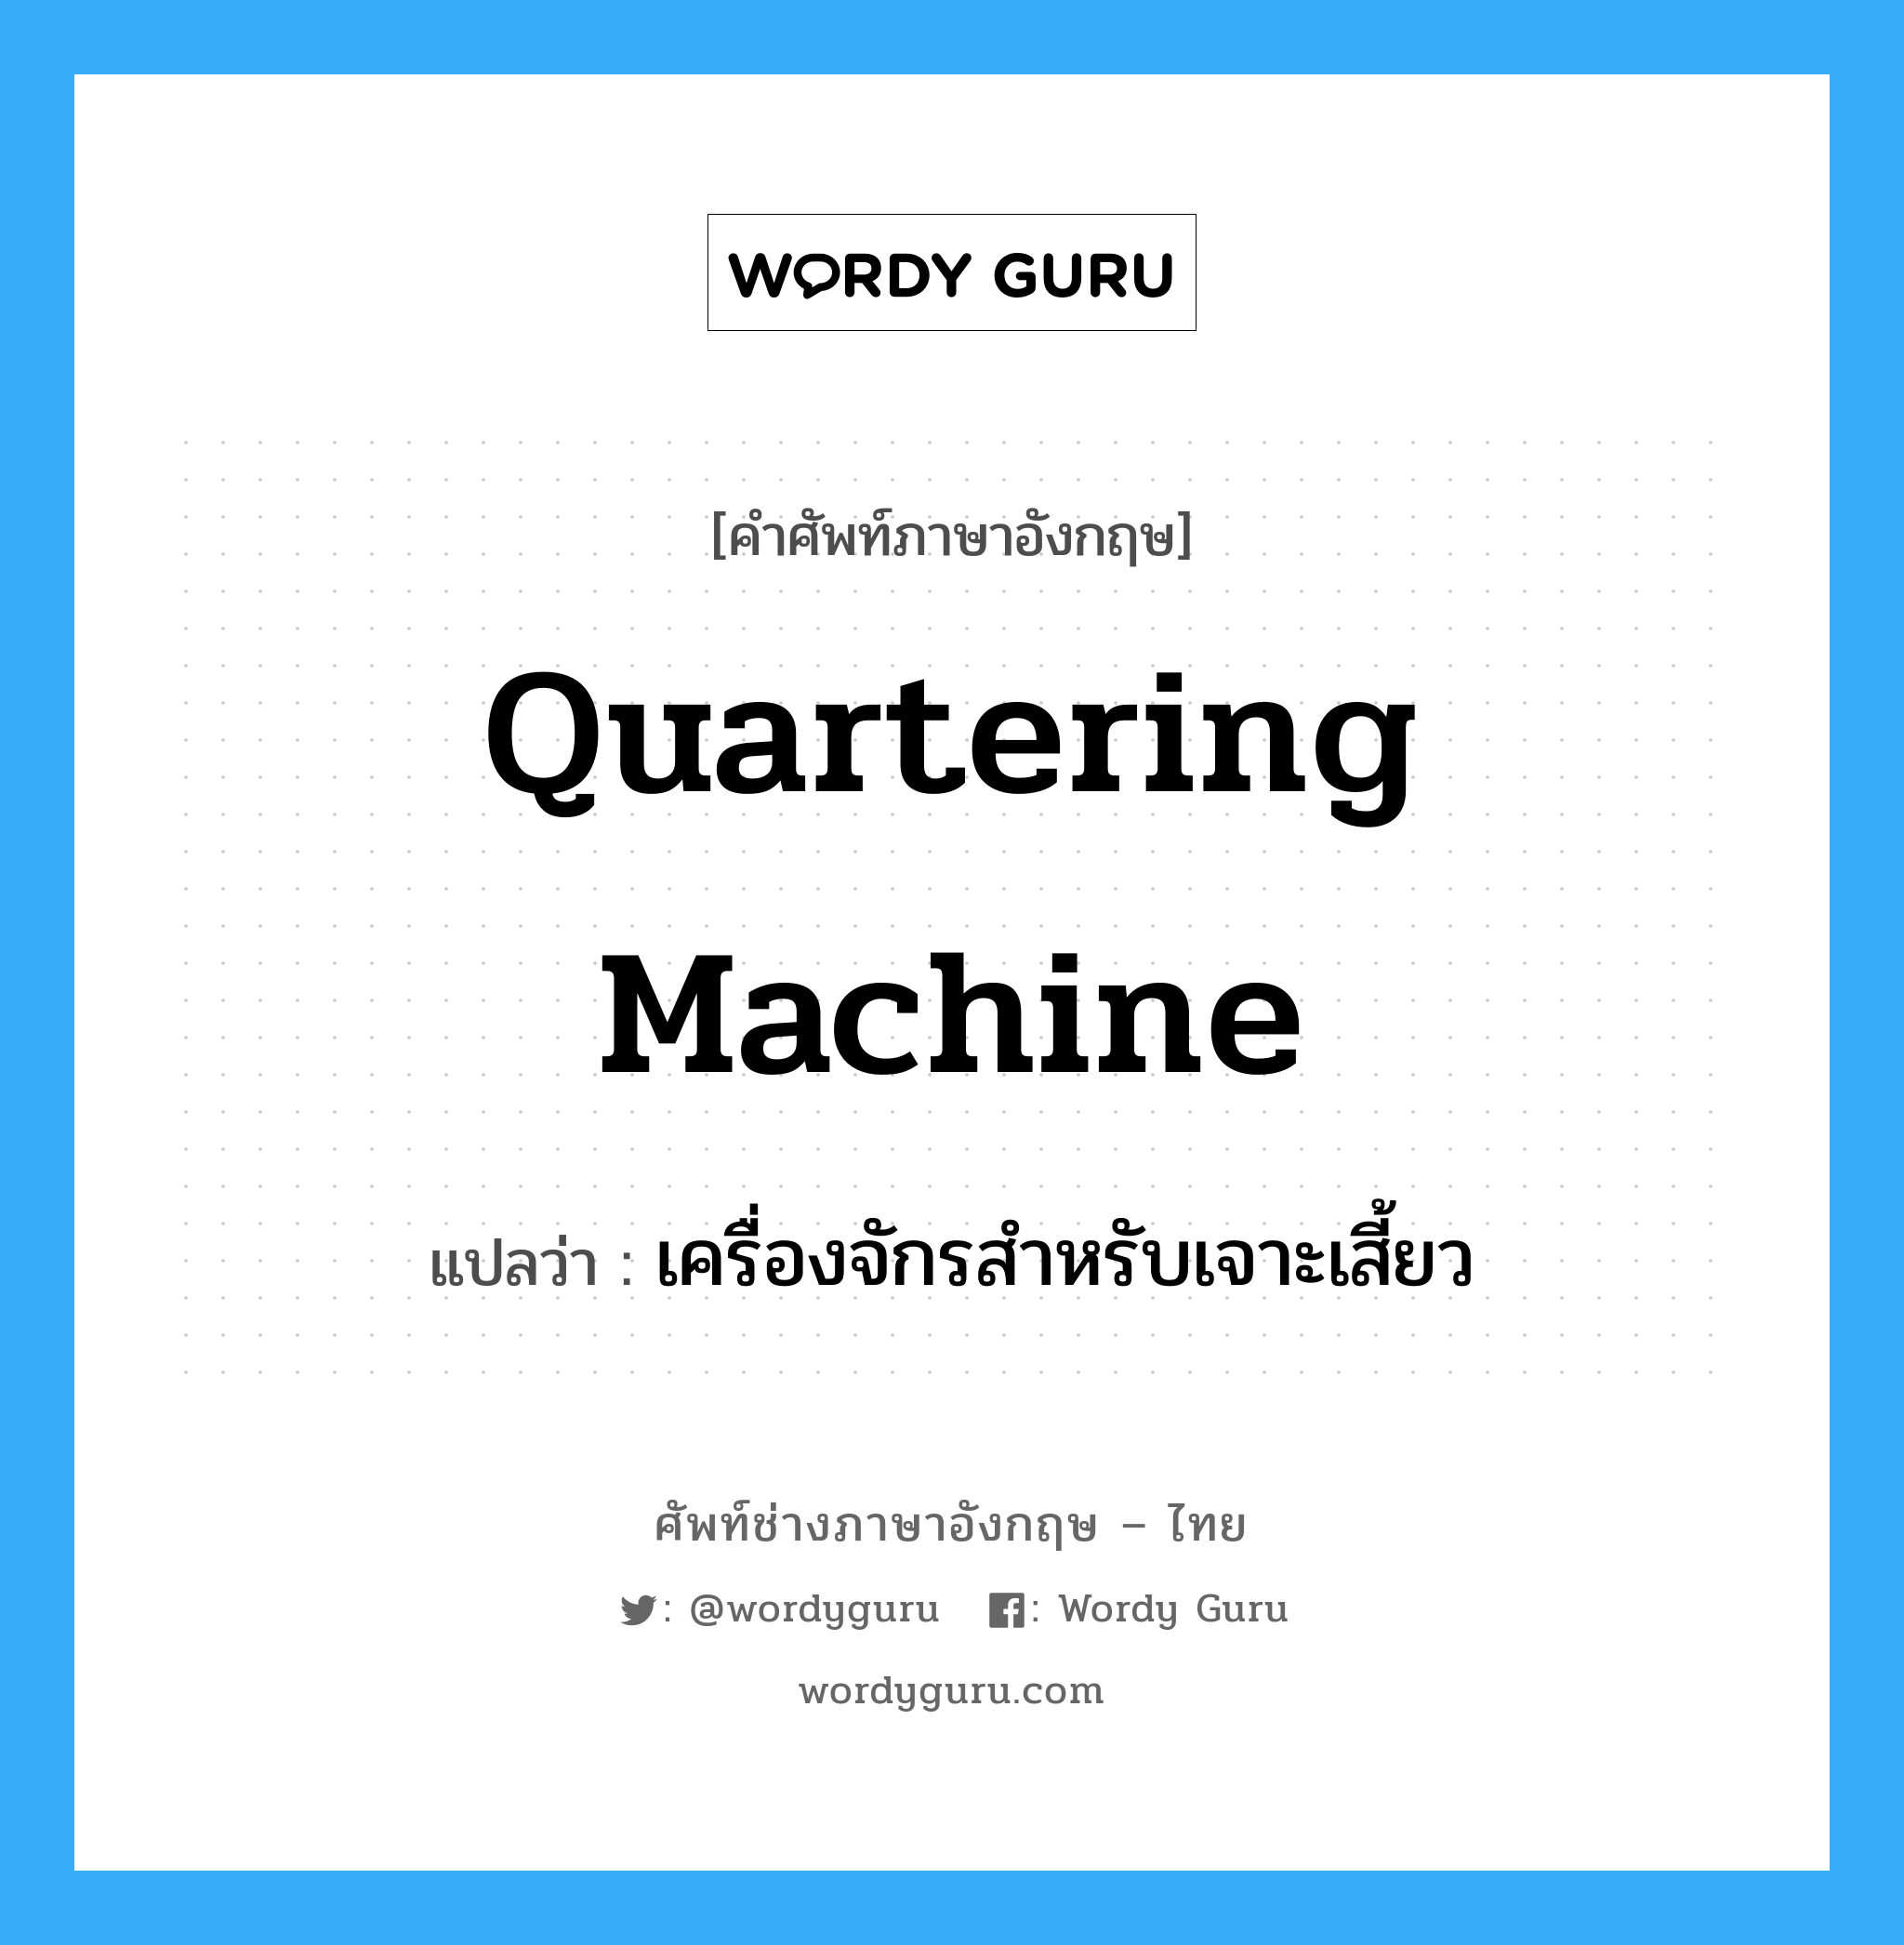 เครื่องจักรสำหรับเจาะเสี้ยว ภาษาอังกฤษ?, คำศัพท์ช่างภาษาอังกฤษ - ไทย เครื่องจักรสำหรับเจาะเสี้ยว คำศัพท์ภาษาอังกฤษ เครื่องจักรสำหรับเจาะเสี้ยว แปลว่า quartering machine